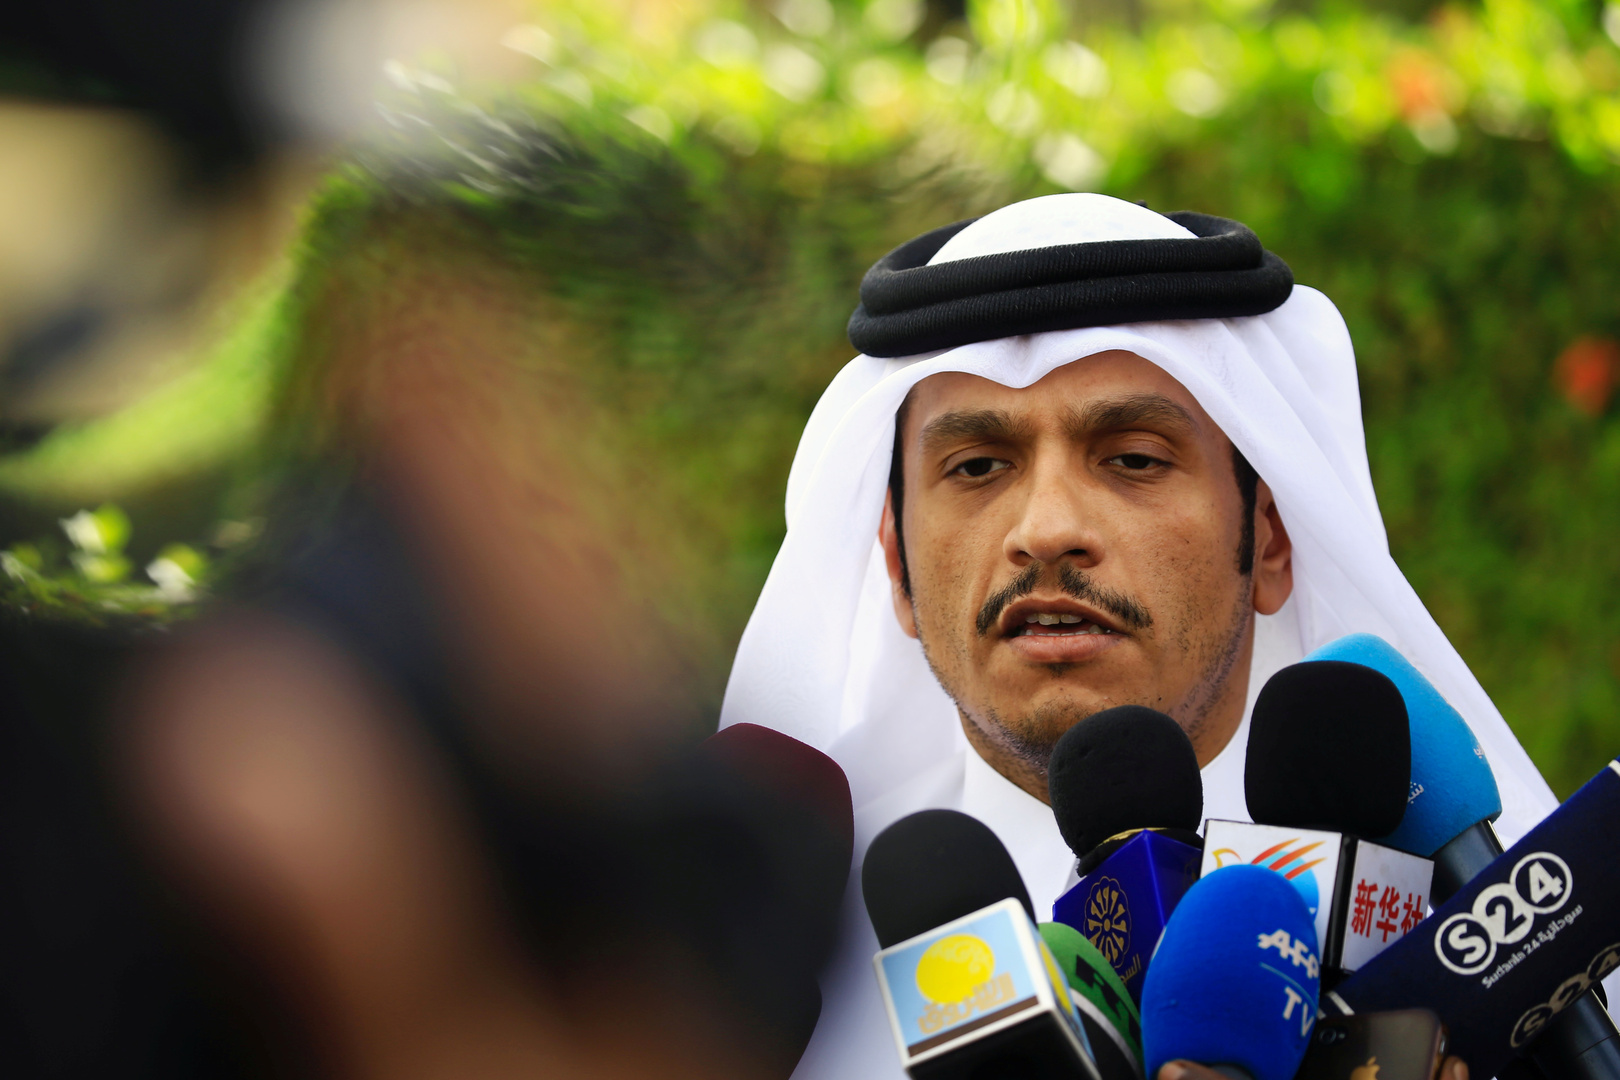 قطر تدعو دول المقاطعة للتحلي بقدر أكبر من الحكمة